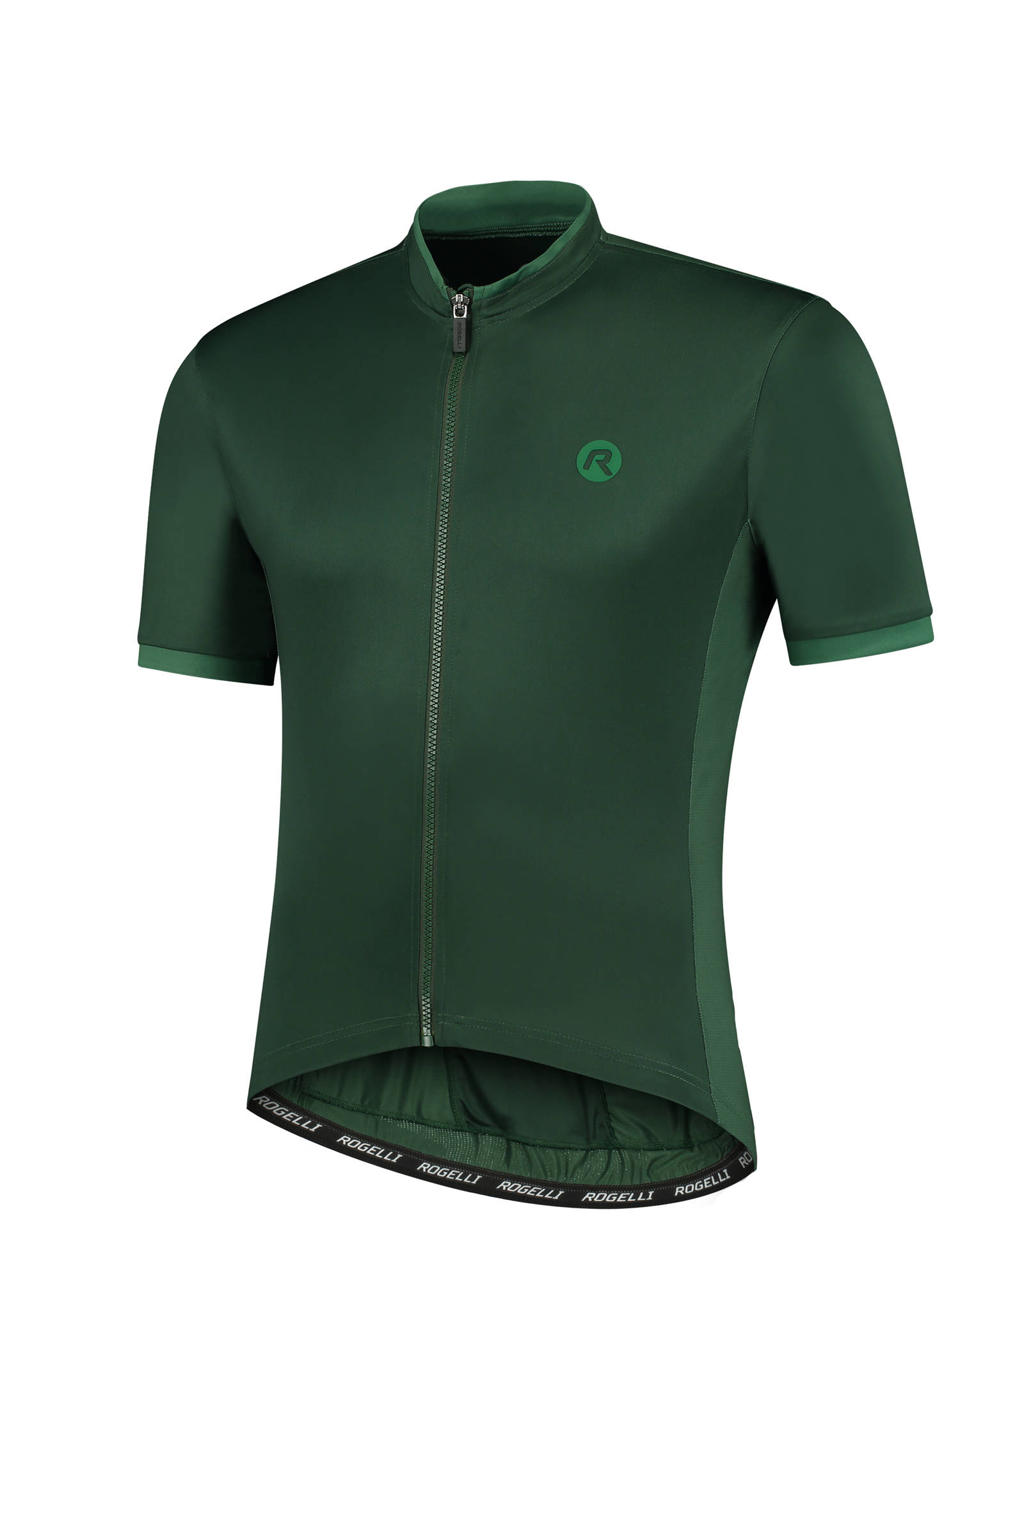 Rogelli   fietsshirt Essential groen